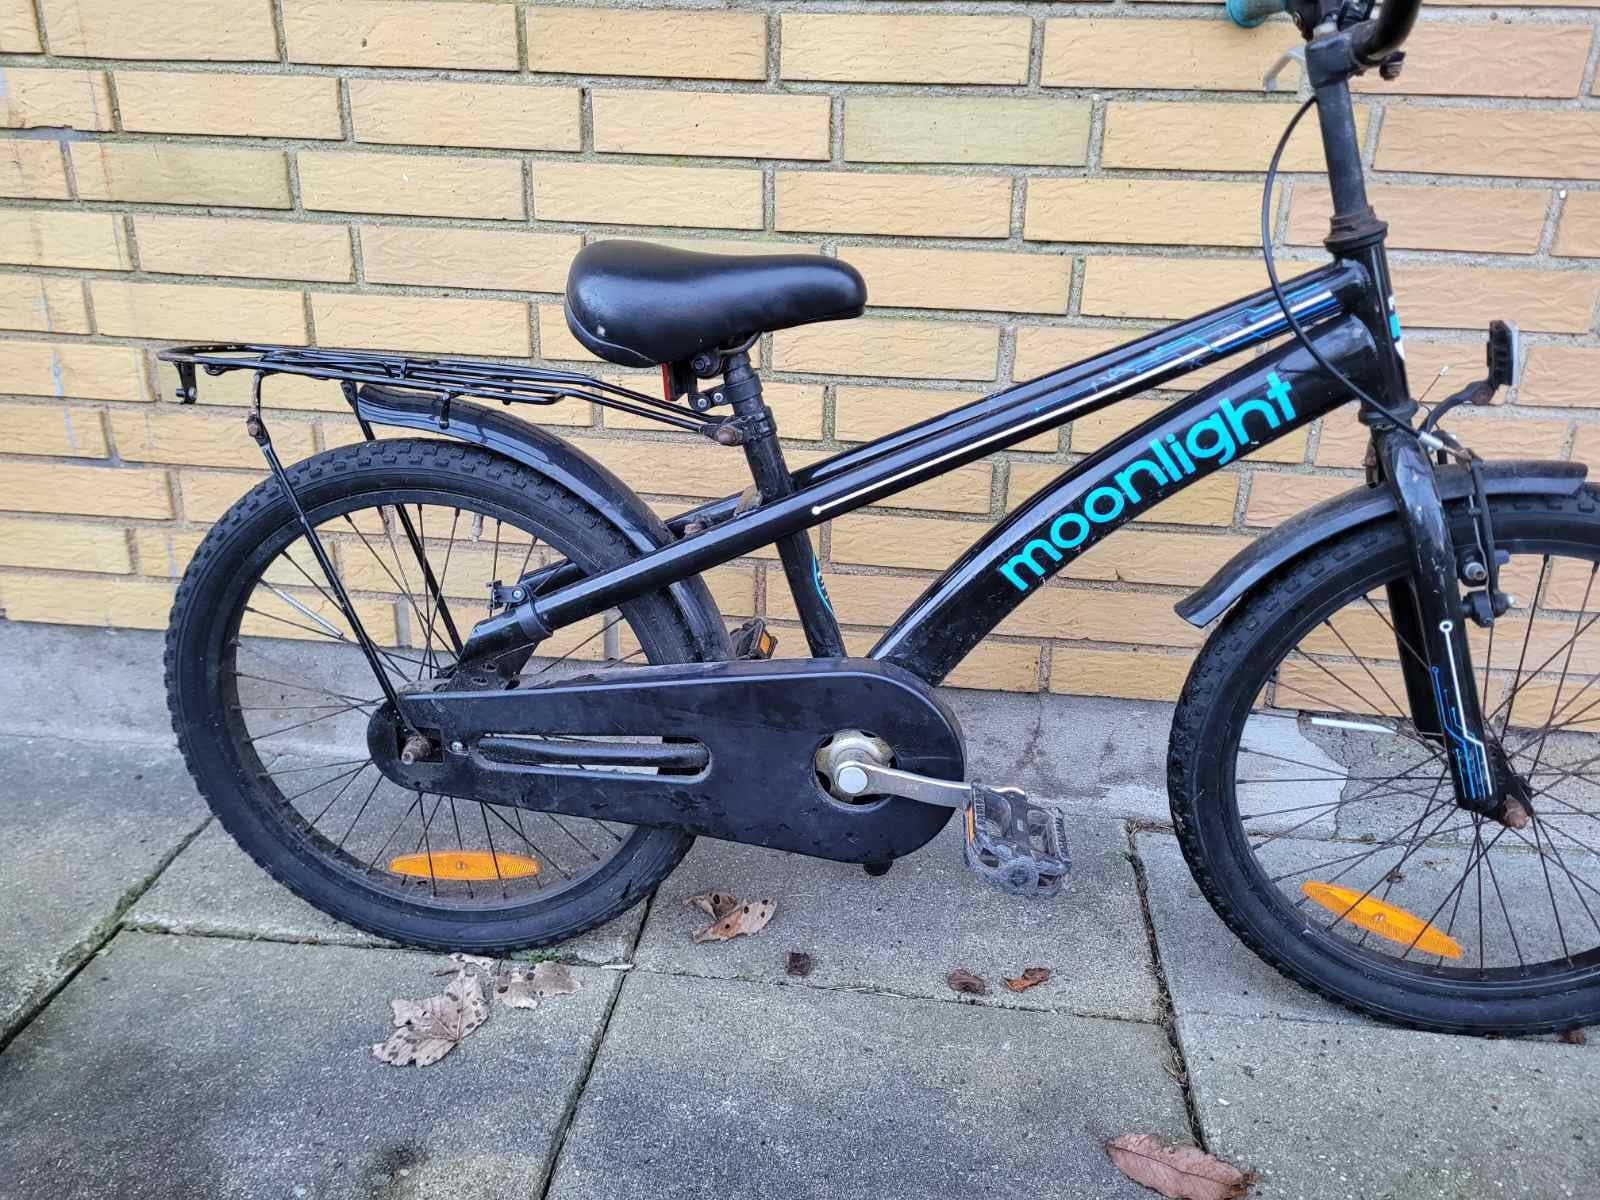 Unisex børnecykel, citybike, andet mærke